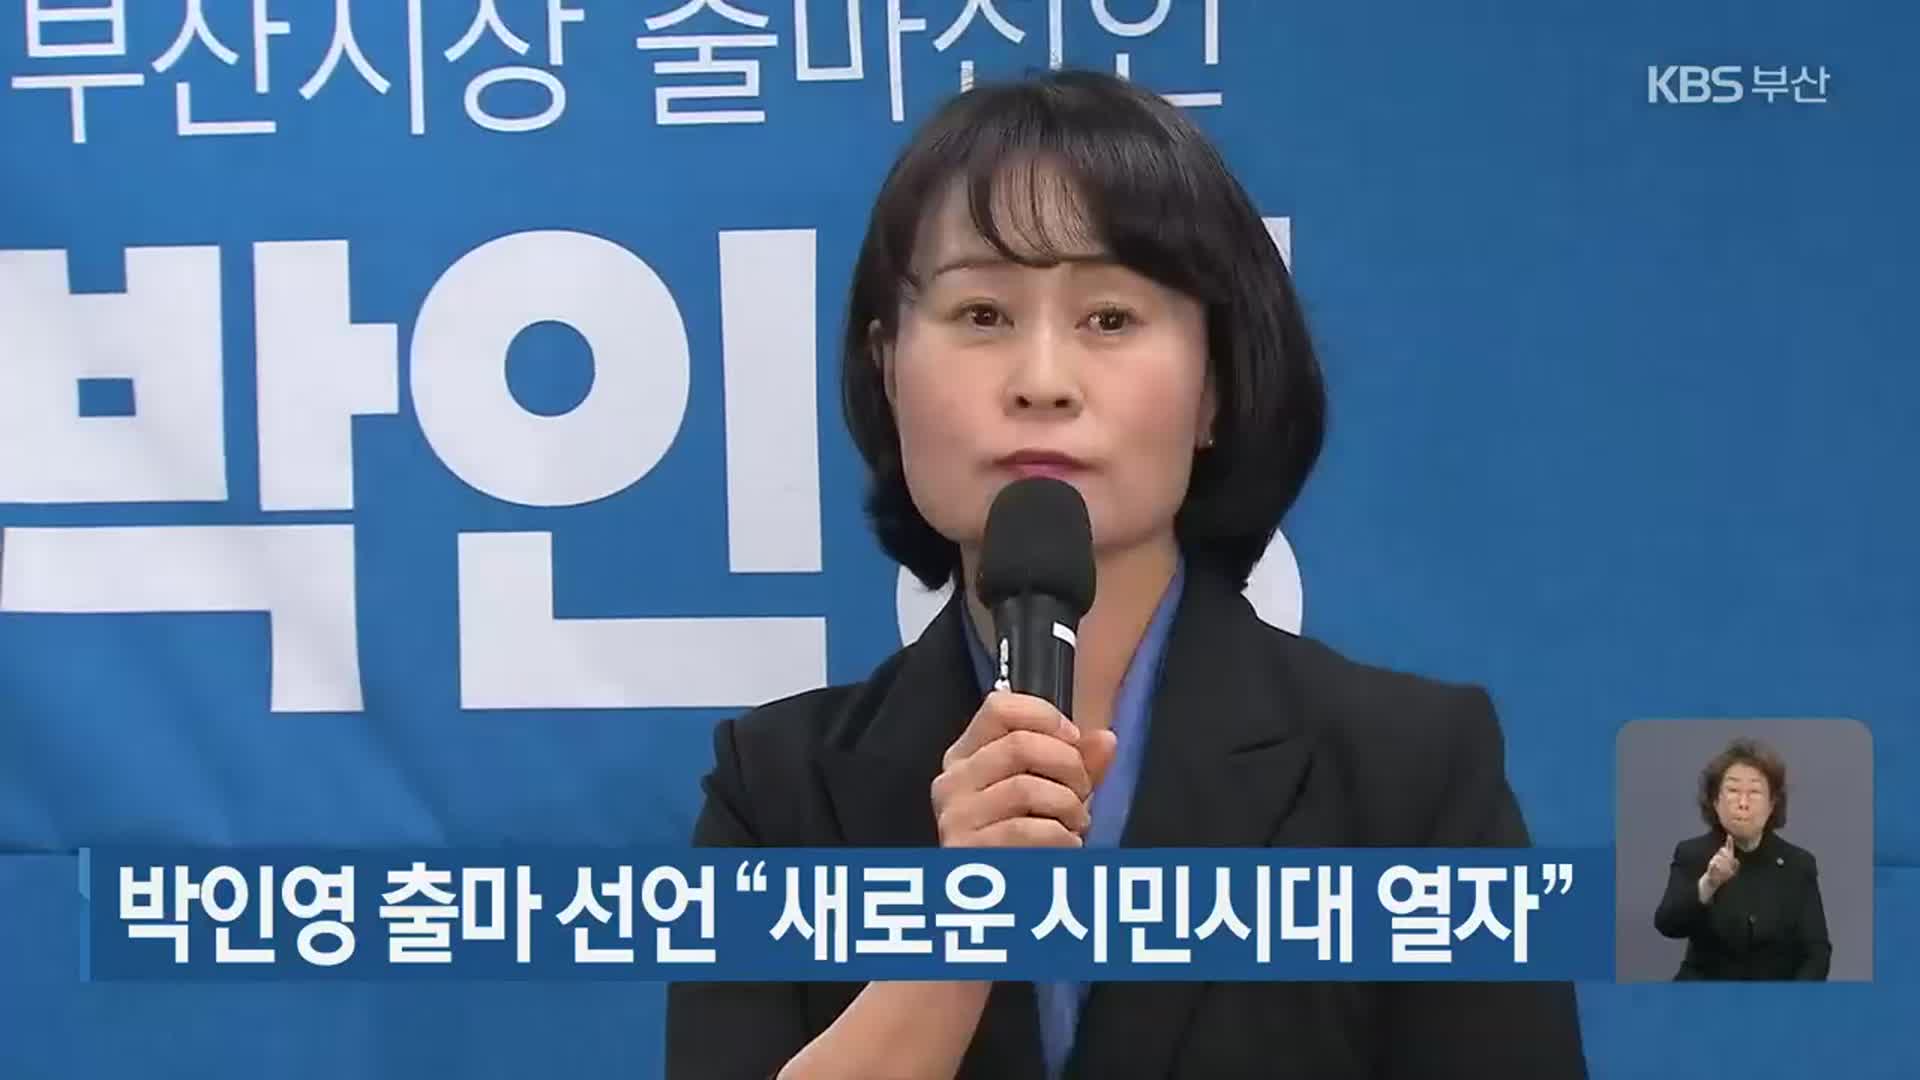 박인영 출마 선언 “새로운 시민시대 열자”